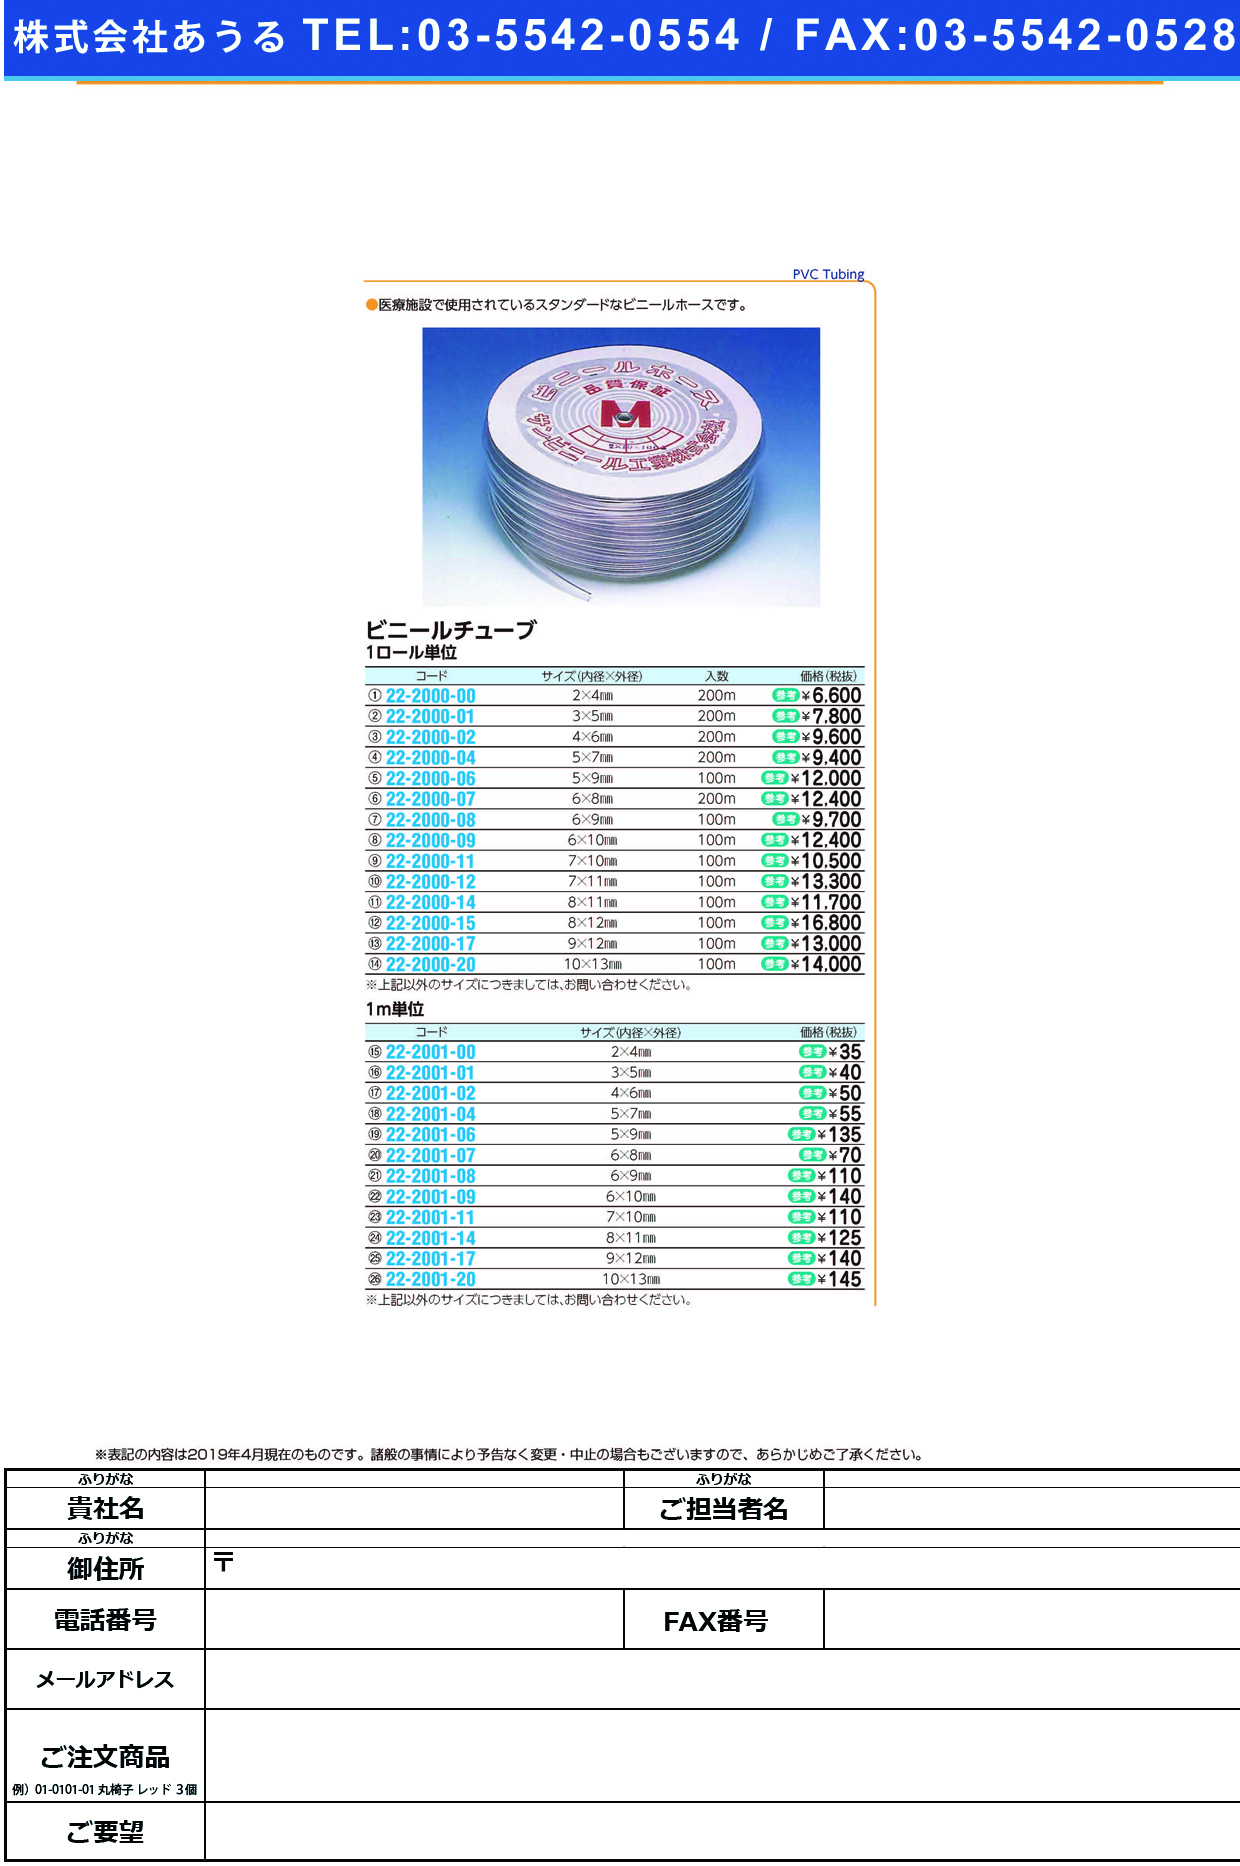 (22-2000-06)ビニールチューブ 5X9MM(100M) ﾋﾞﾆｰﾙﾁｭｰﾌﾞ【1巻単位】【2019年カタログ商品】